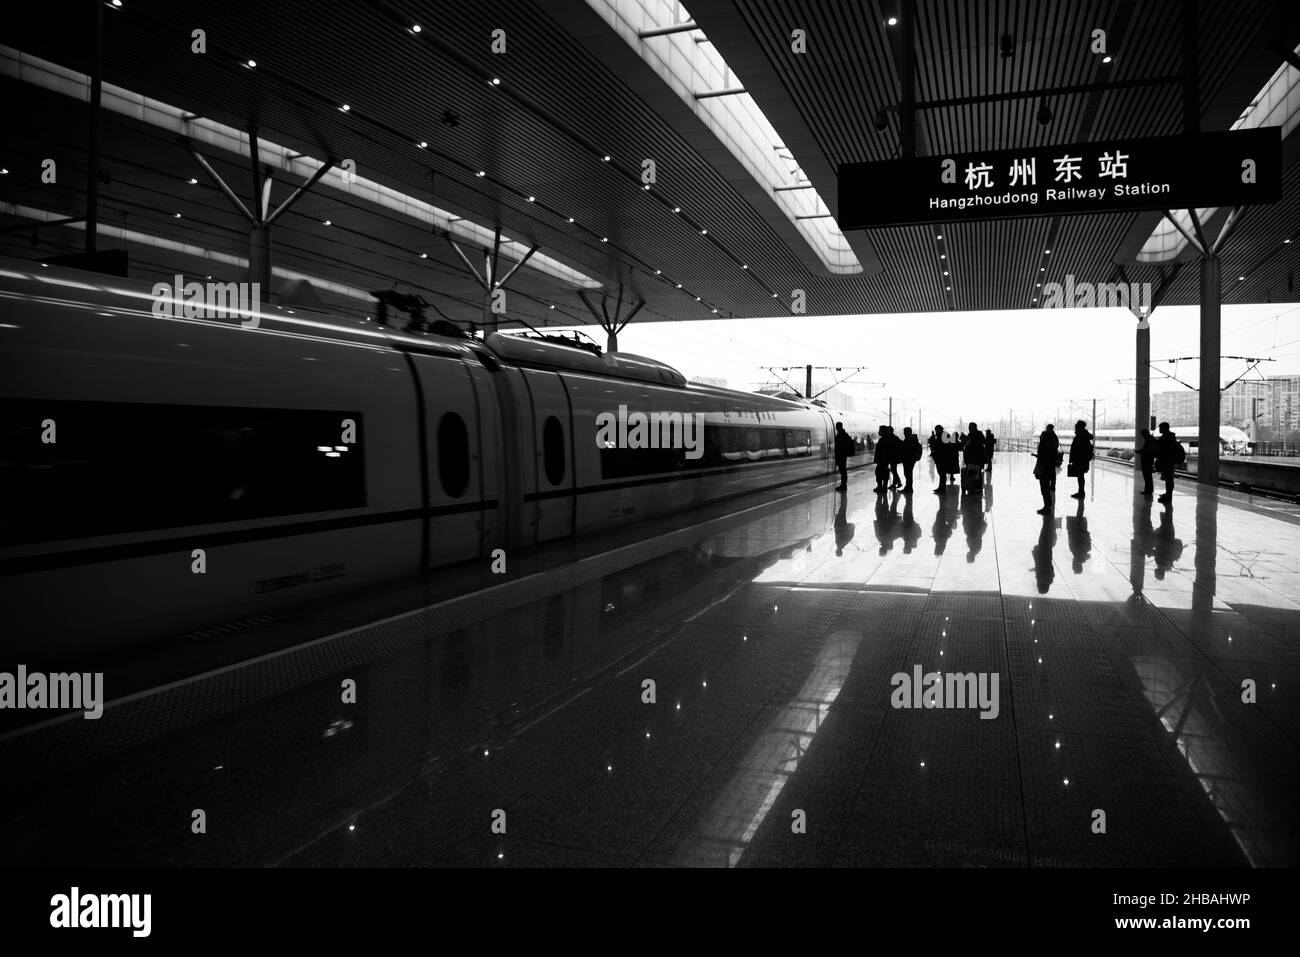 Février 2019.La gare de Hangzhou est située dans le quartier de Shangcheng, Hangzhou, dans la province chinoise du Zhejiang.La station est classée première classe Banque D'Images